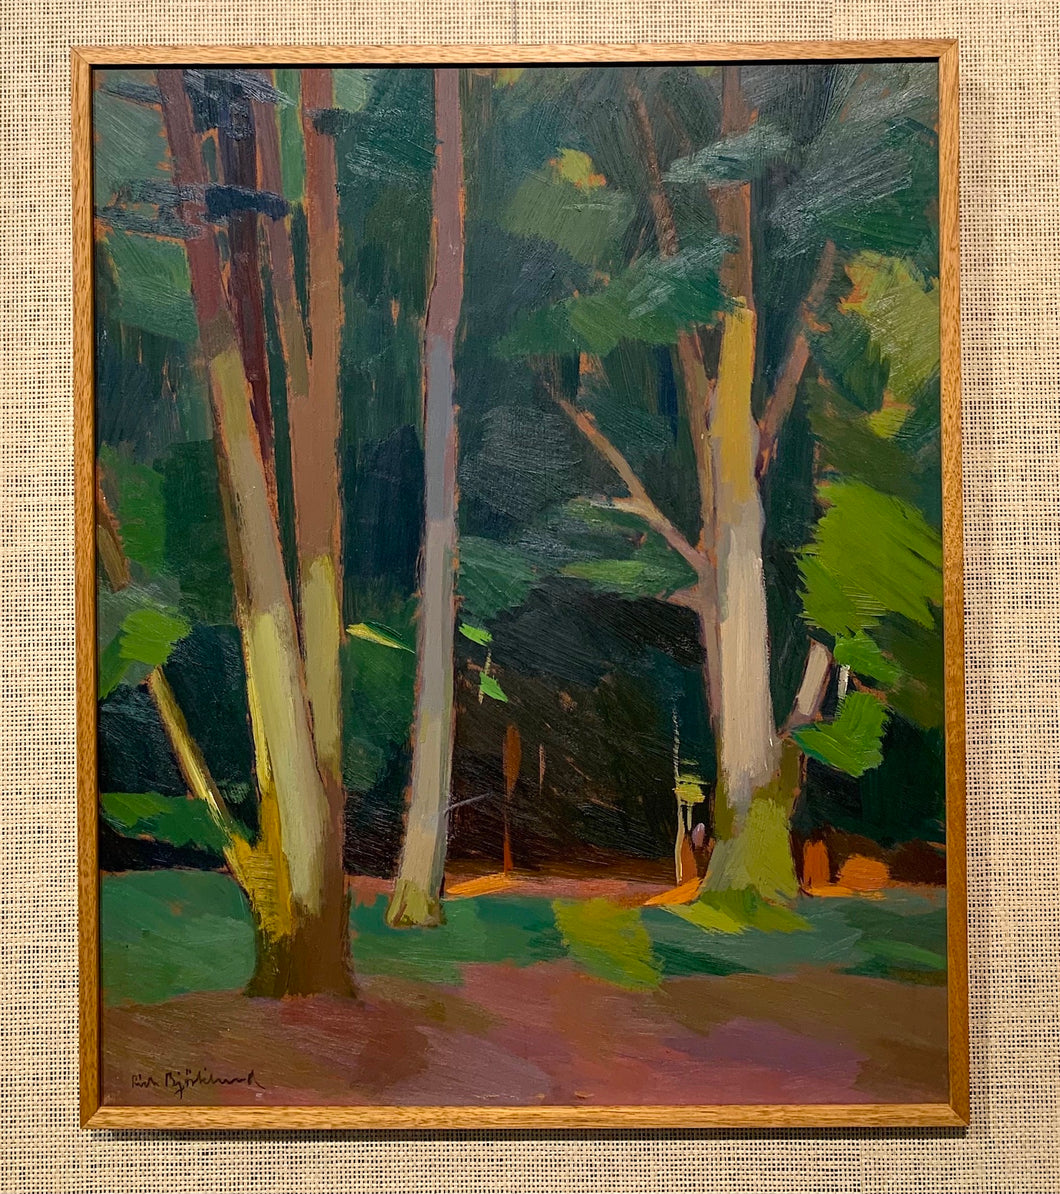 'Kväll i skogen'  (Evening in the Forest) by Richard Björklund